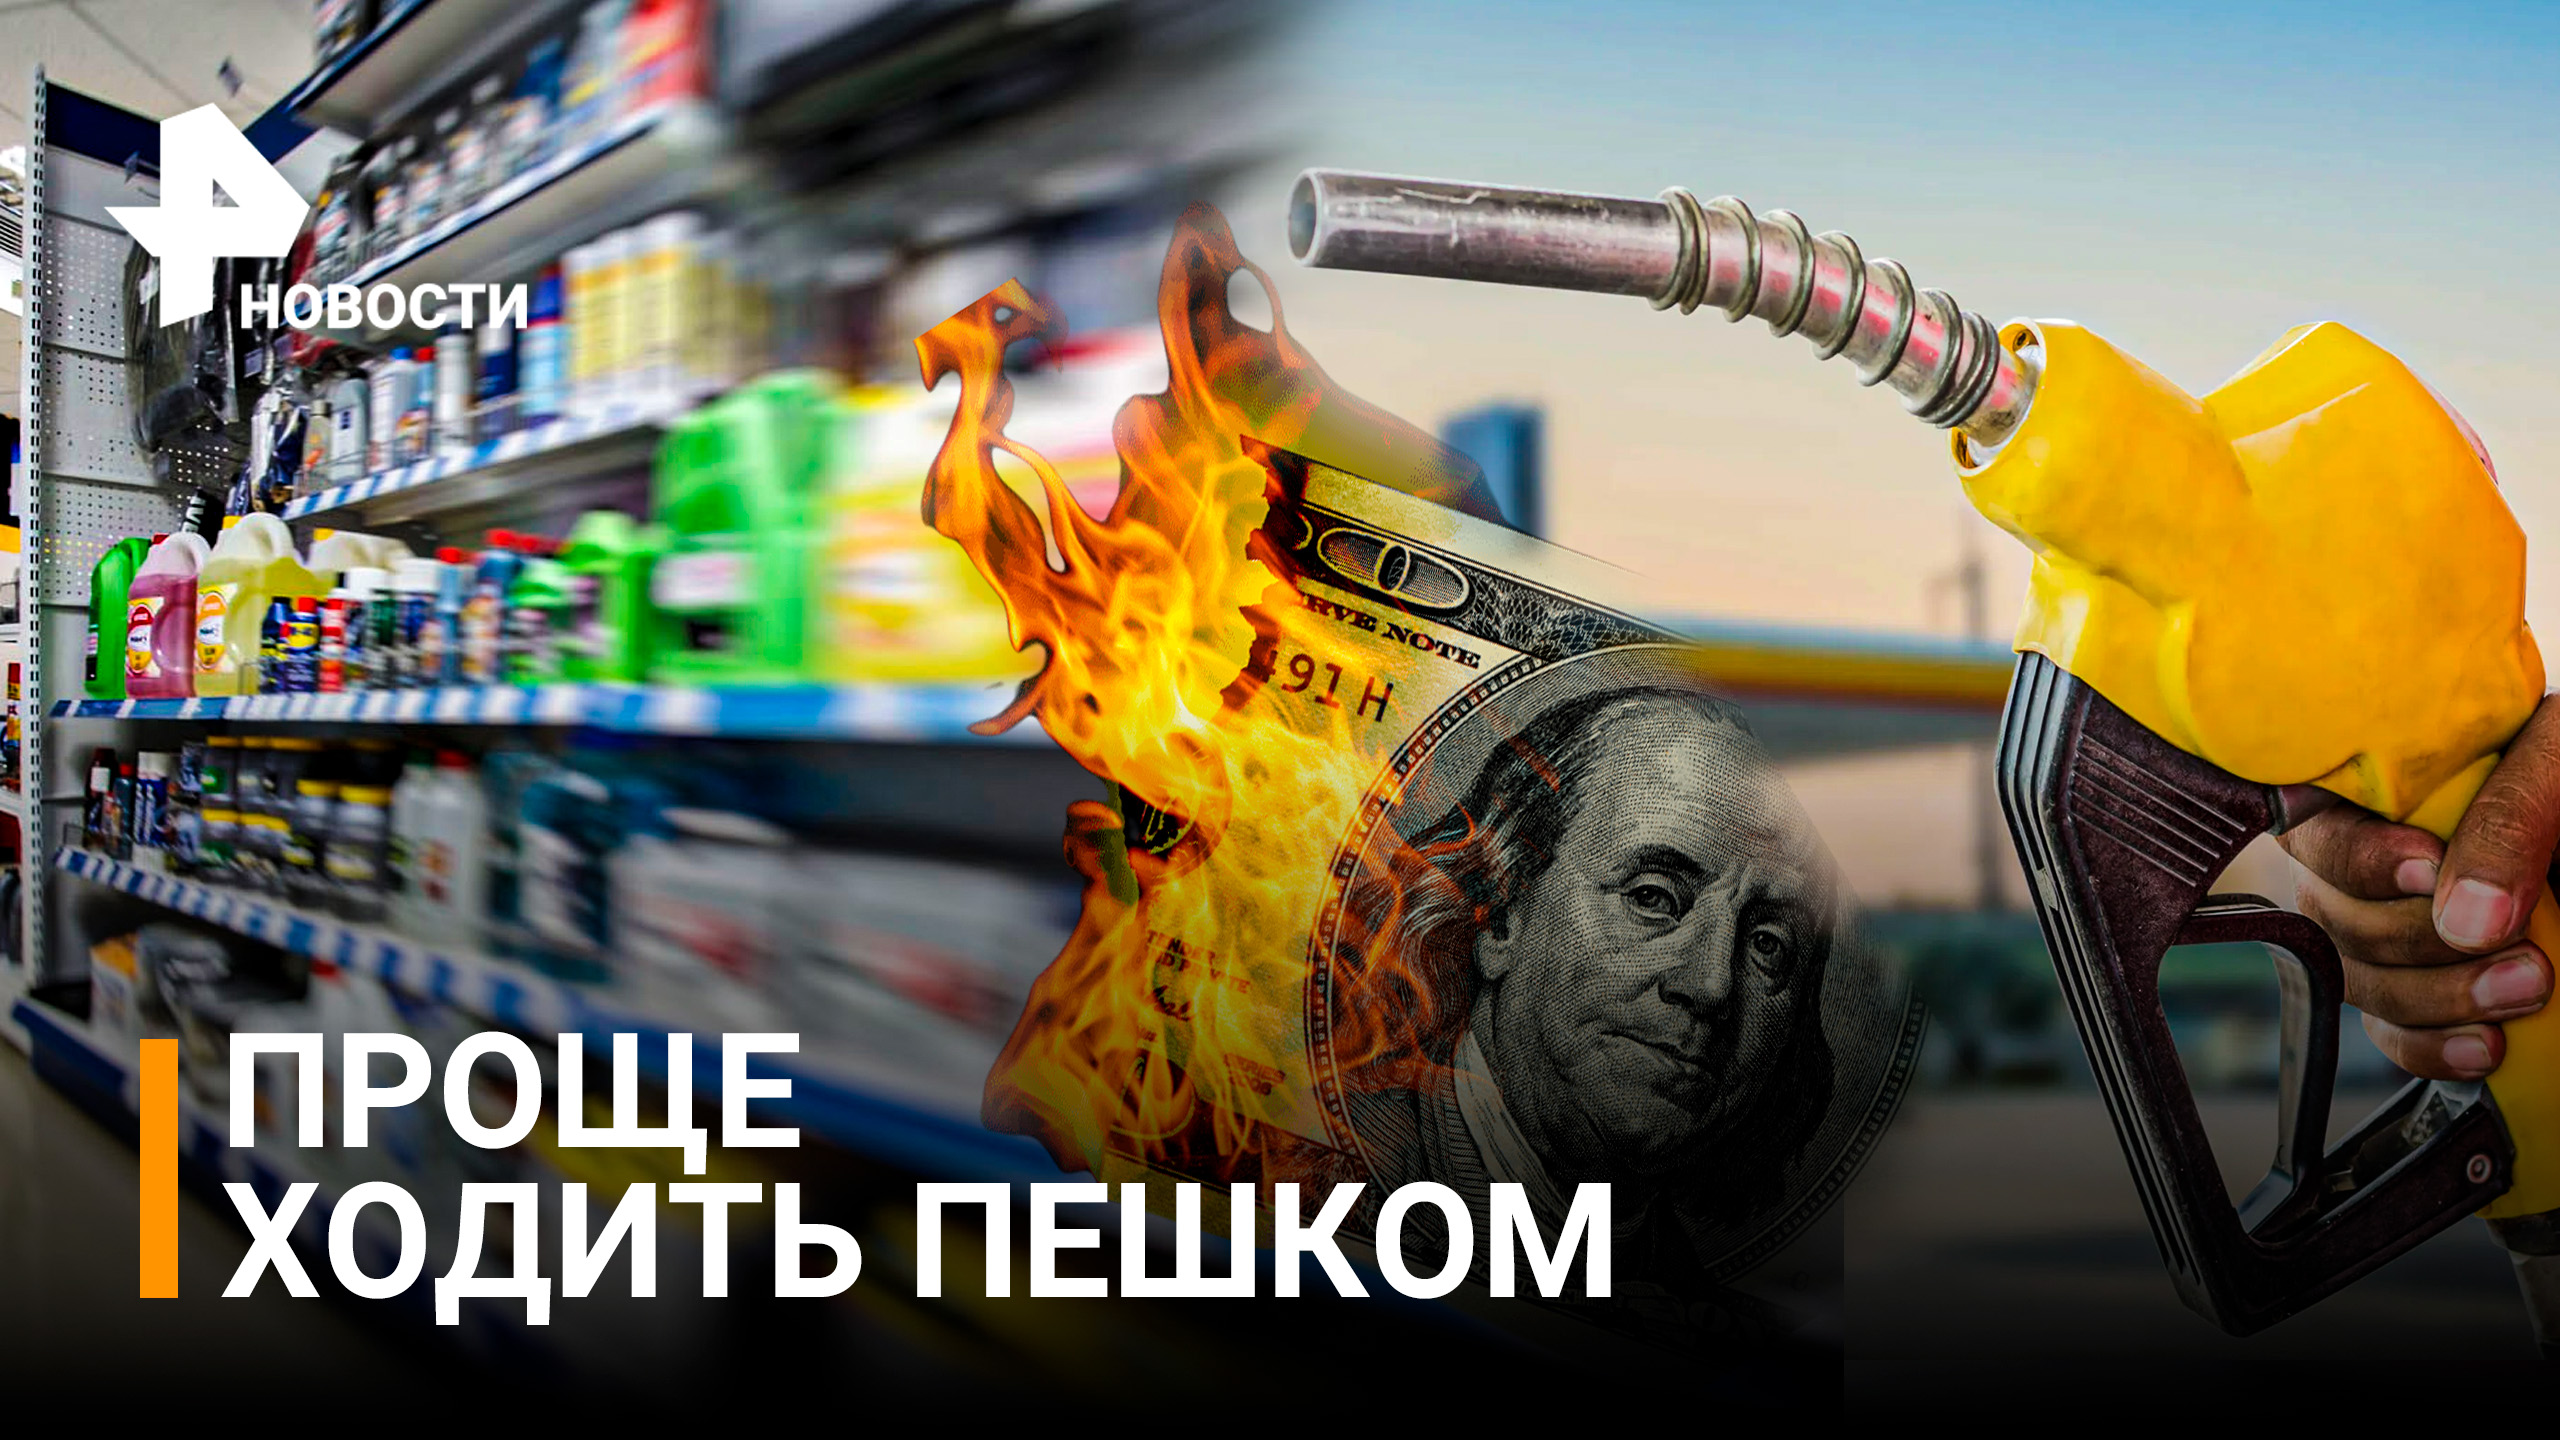 Исторический максимум: 5 долларов за галлон - американцы запасаются бензином впрок / РЕН Новости